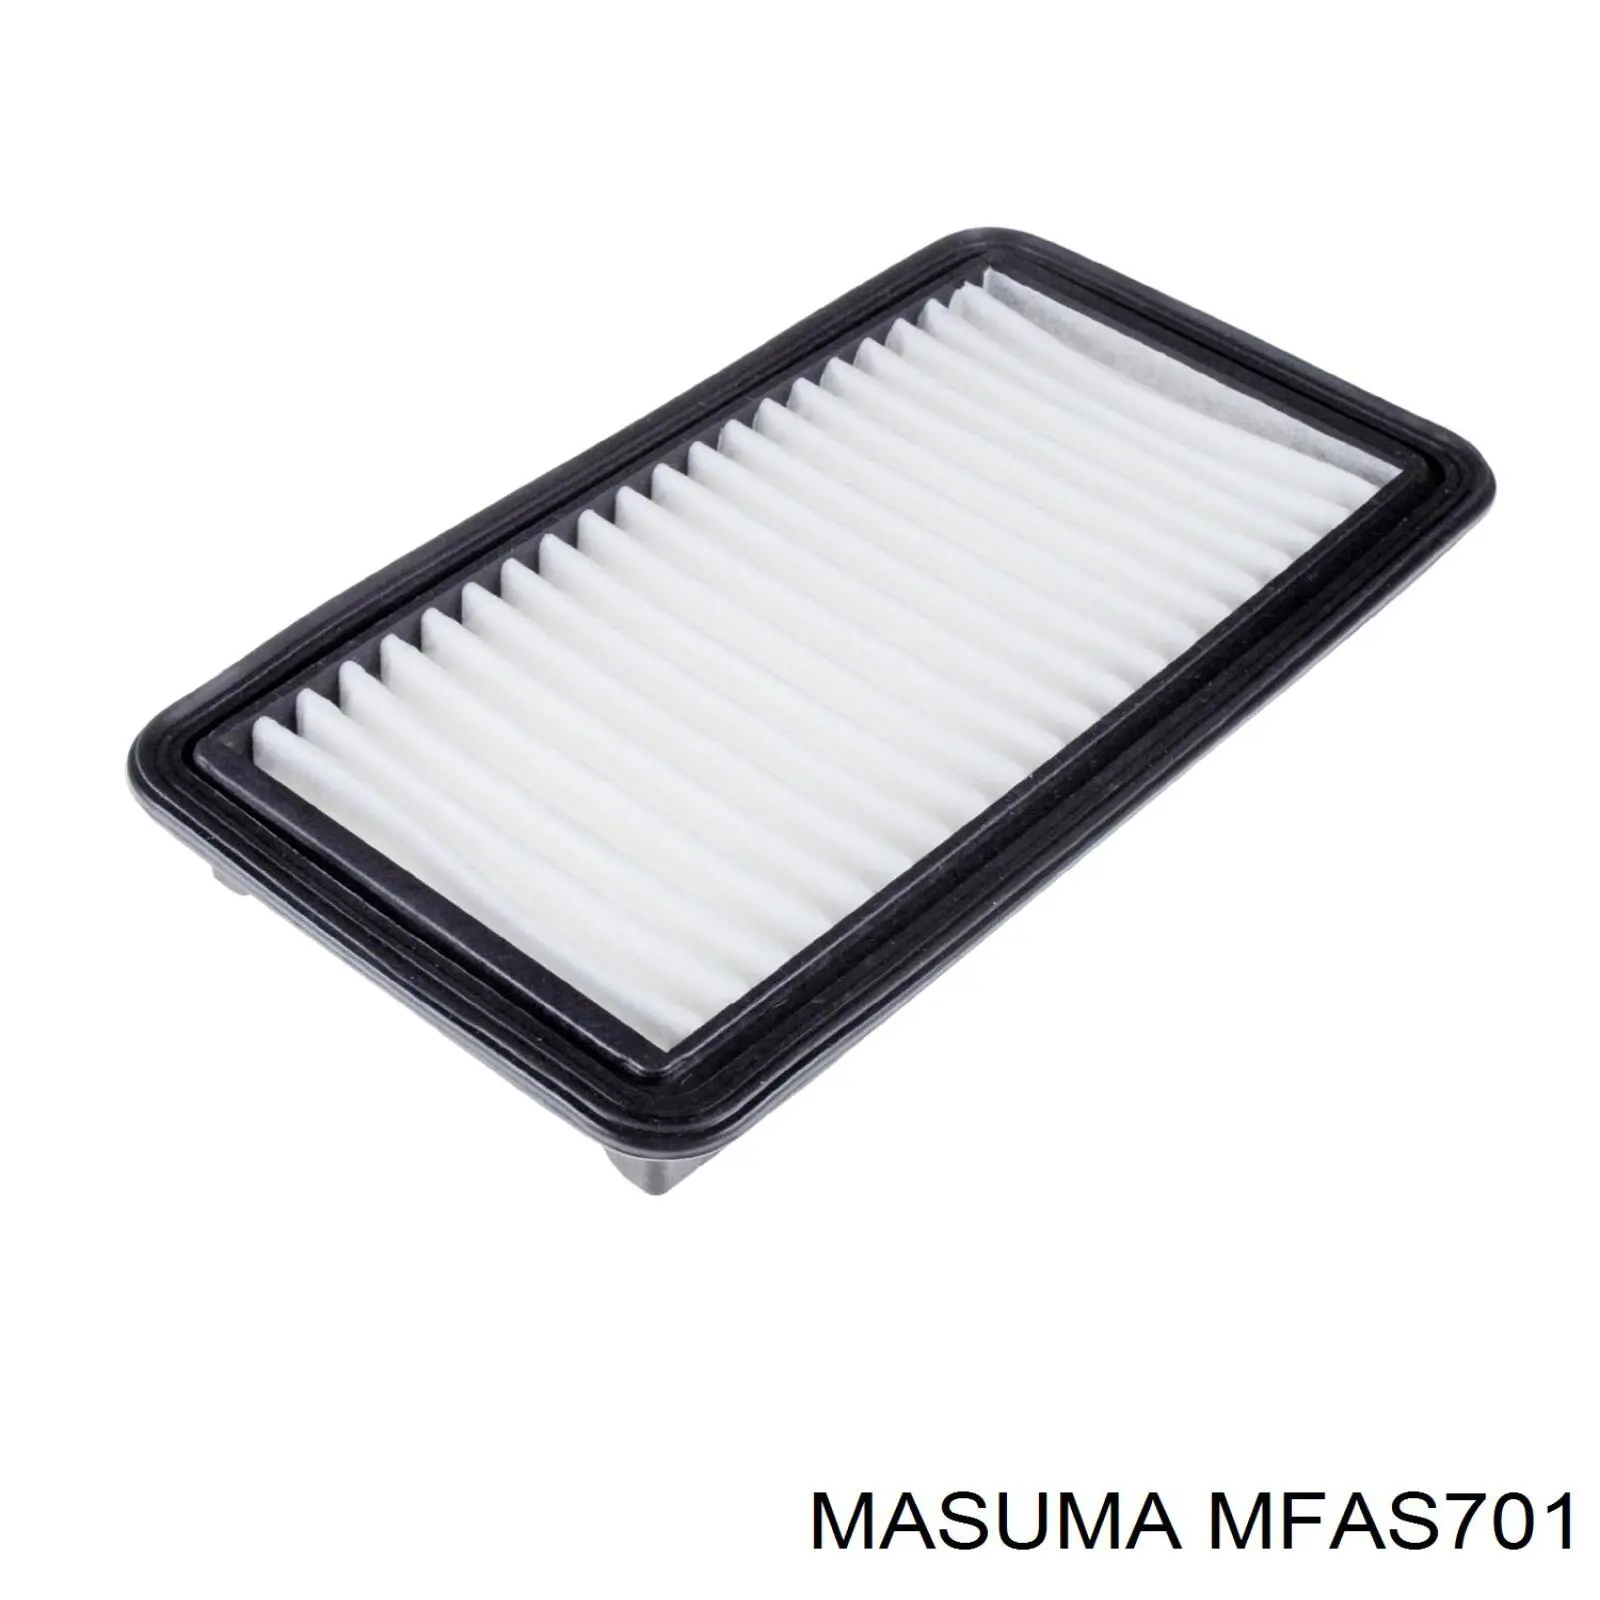 MFAS701 Masuma воздушный фильтр